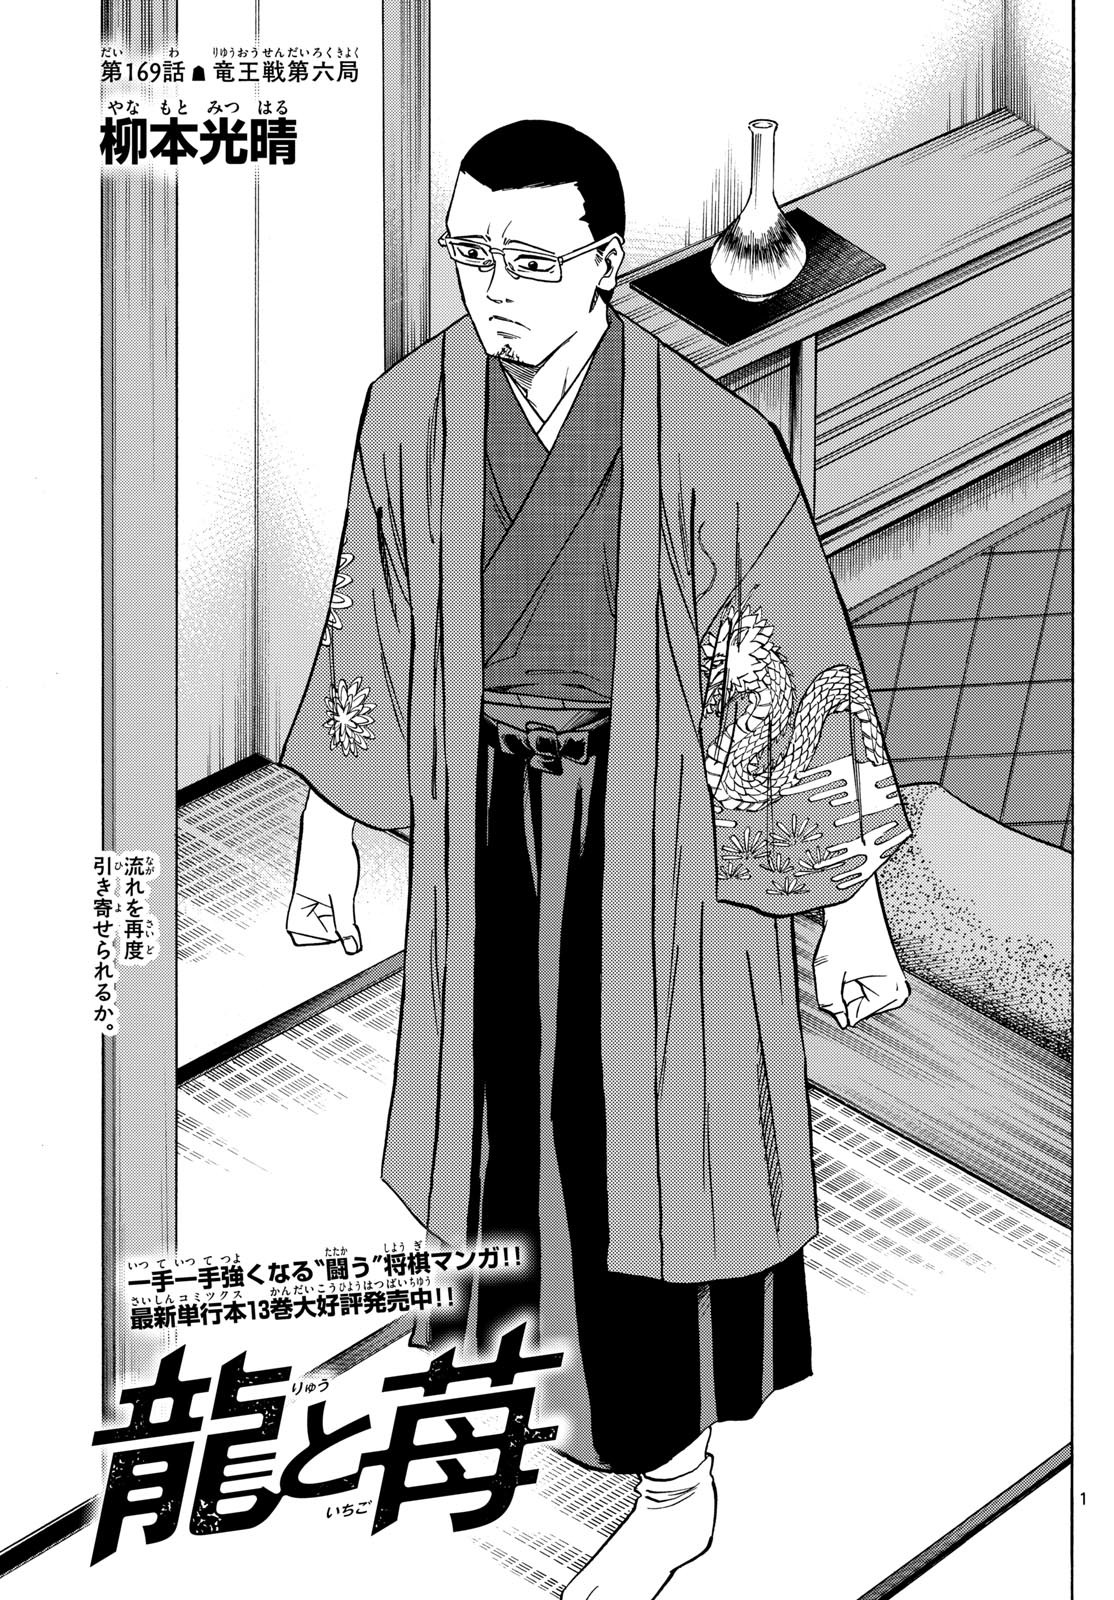 Ryu-to-Ichigo - Chapter 169 - Page 1